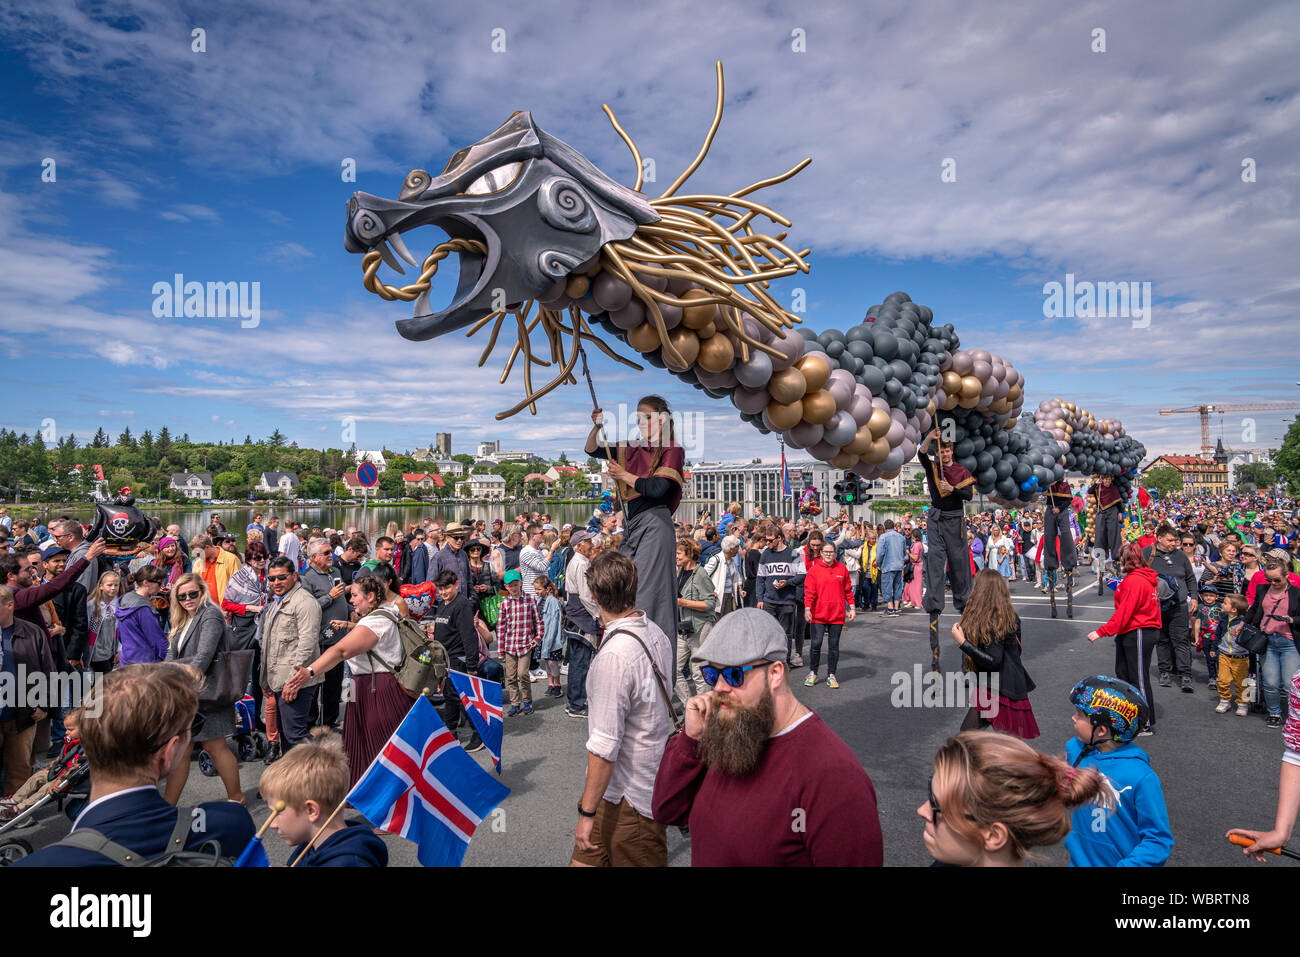 Parade, Iceland's Independence Day, Reykjavik, Iceland Stock Photo